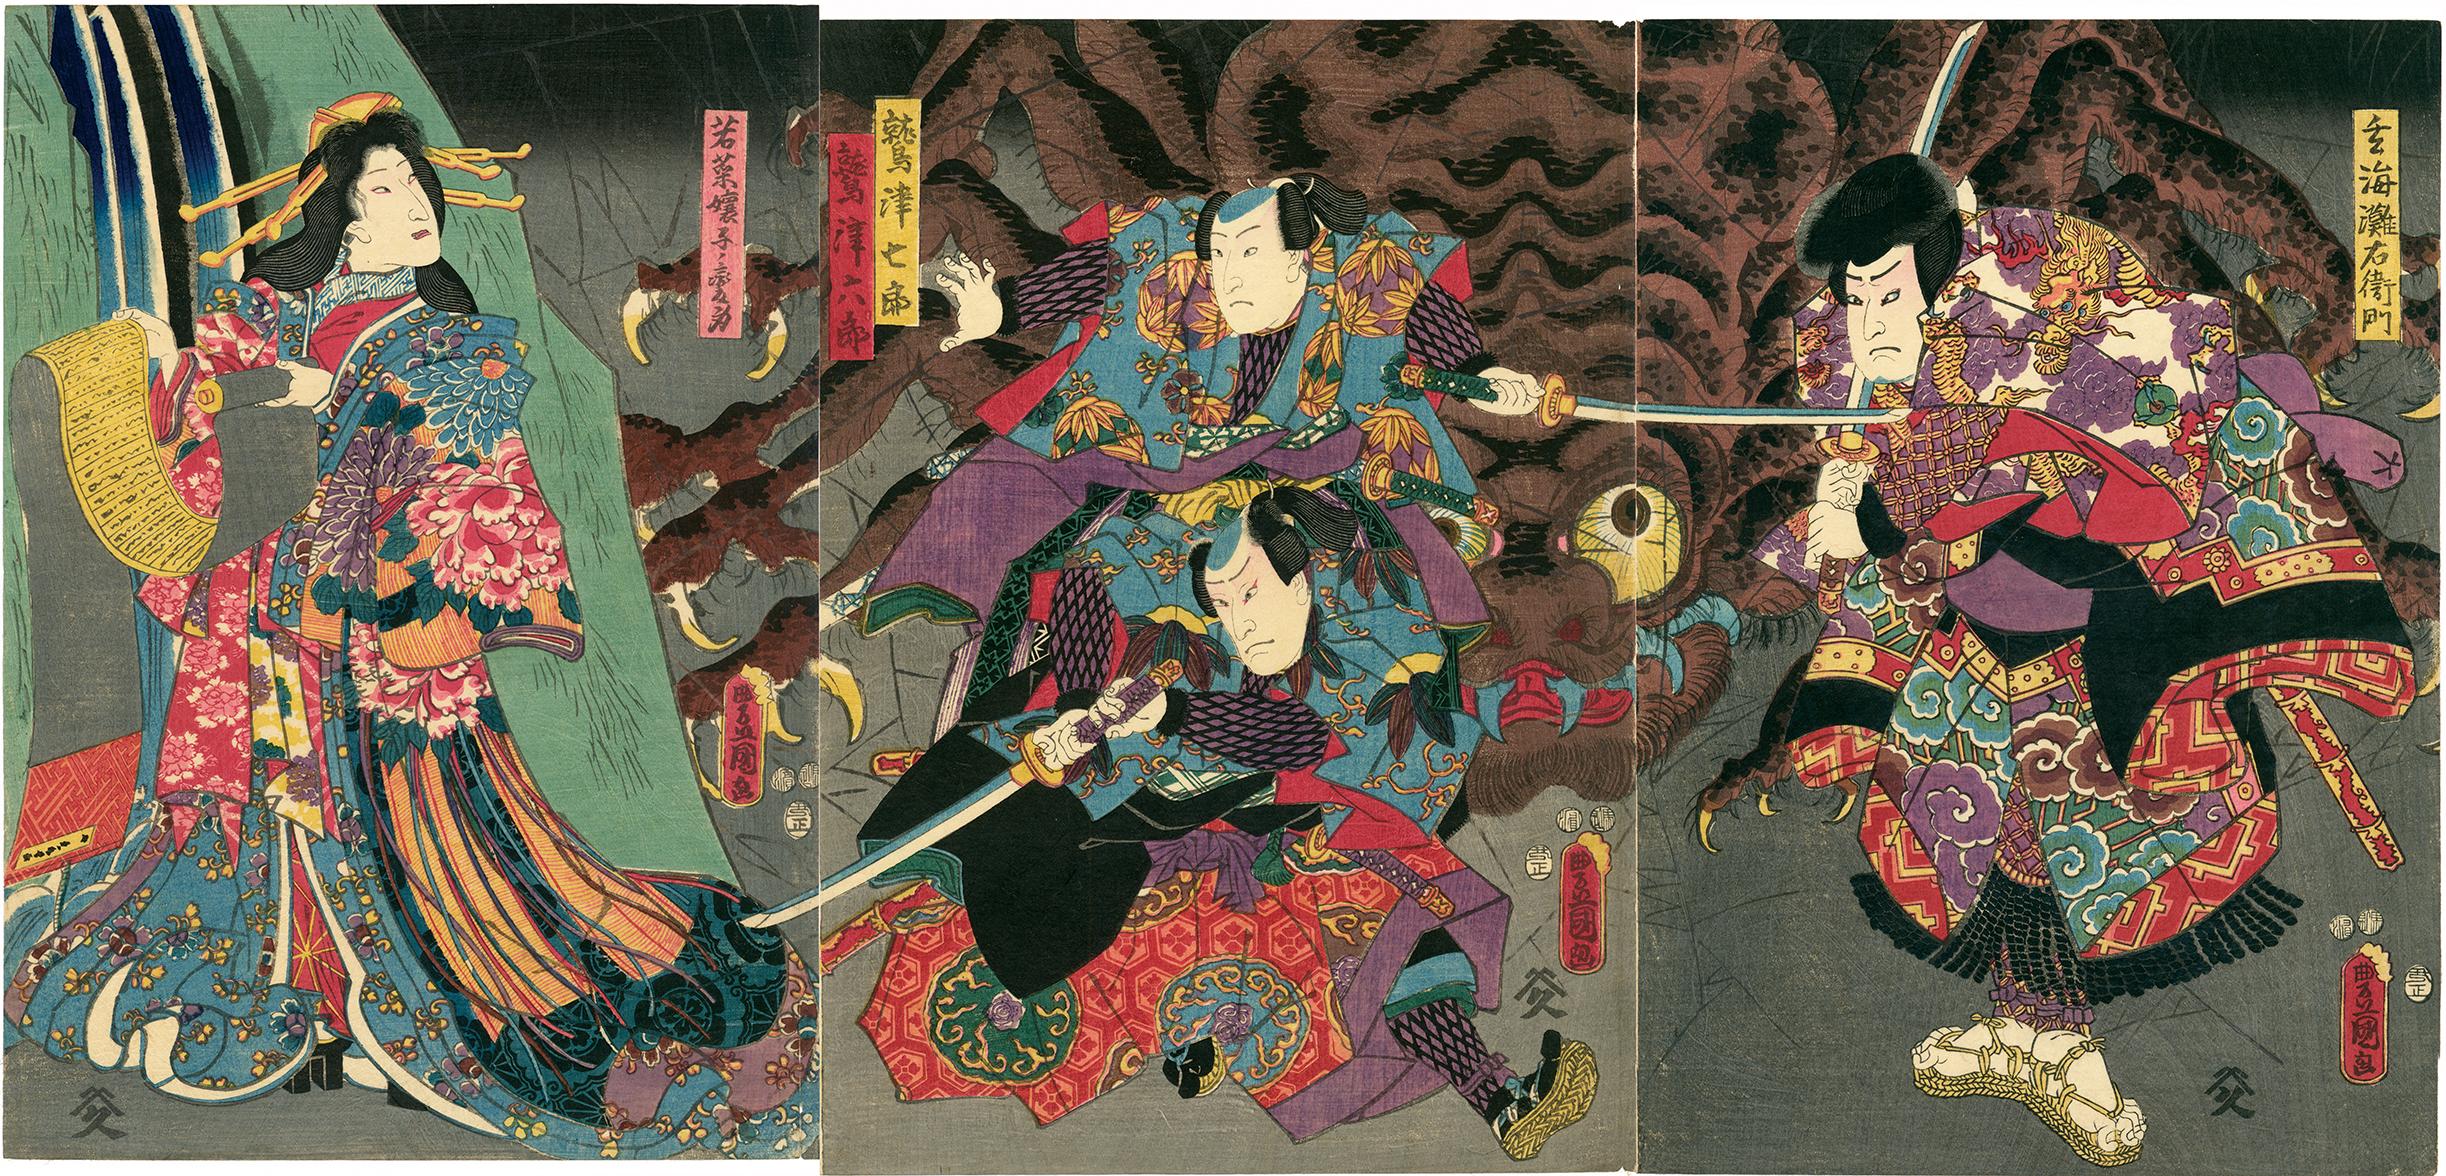 Utagawa Kunisada (Toyokuni III) Animal Print - Princess Wakana and Spider Magic Triptych Japanese Print